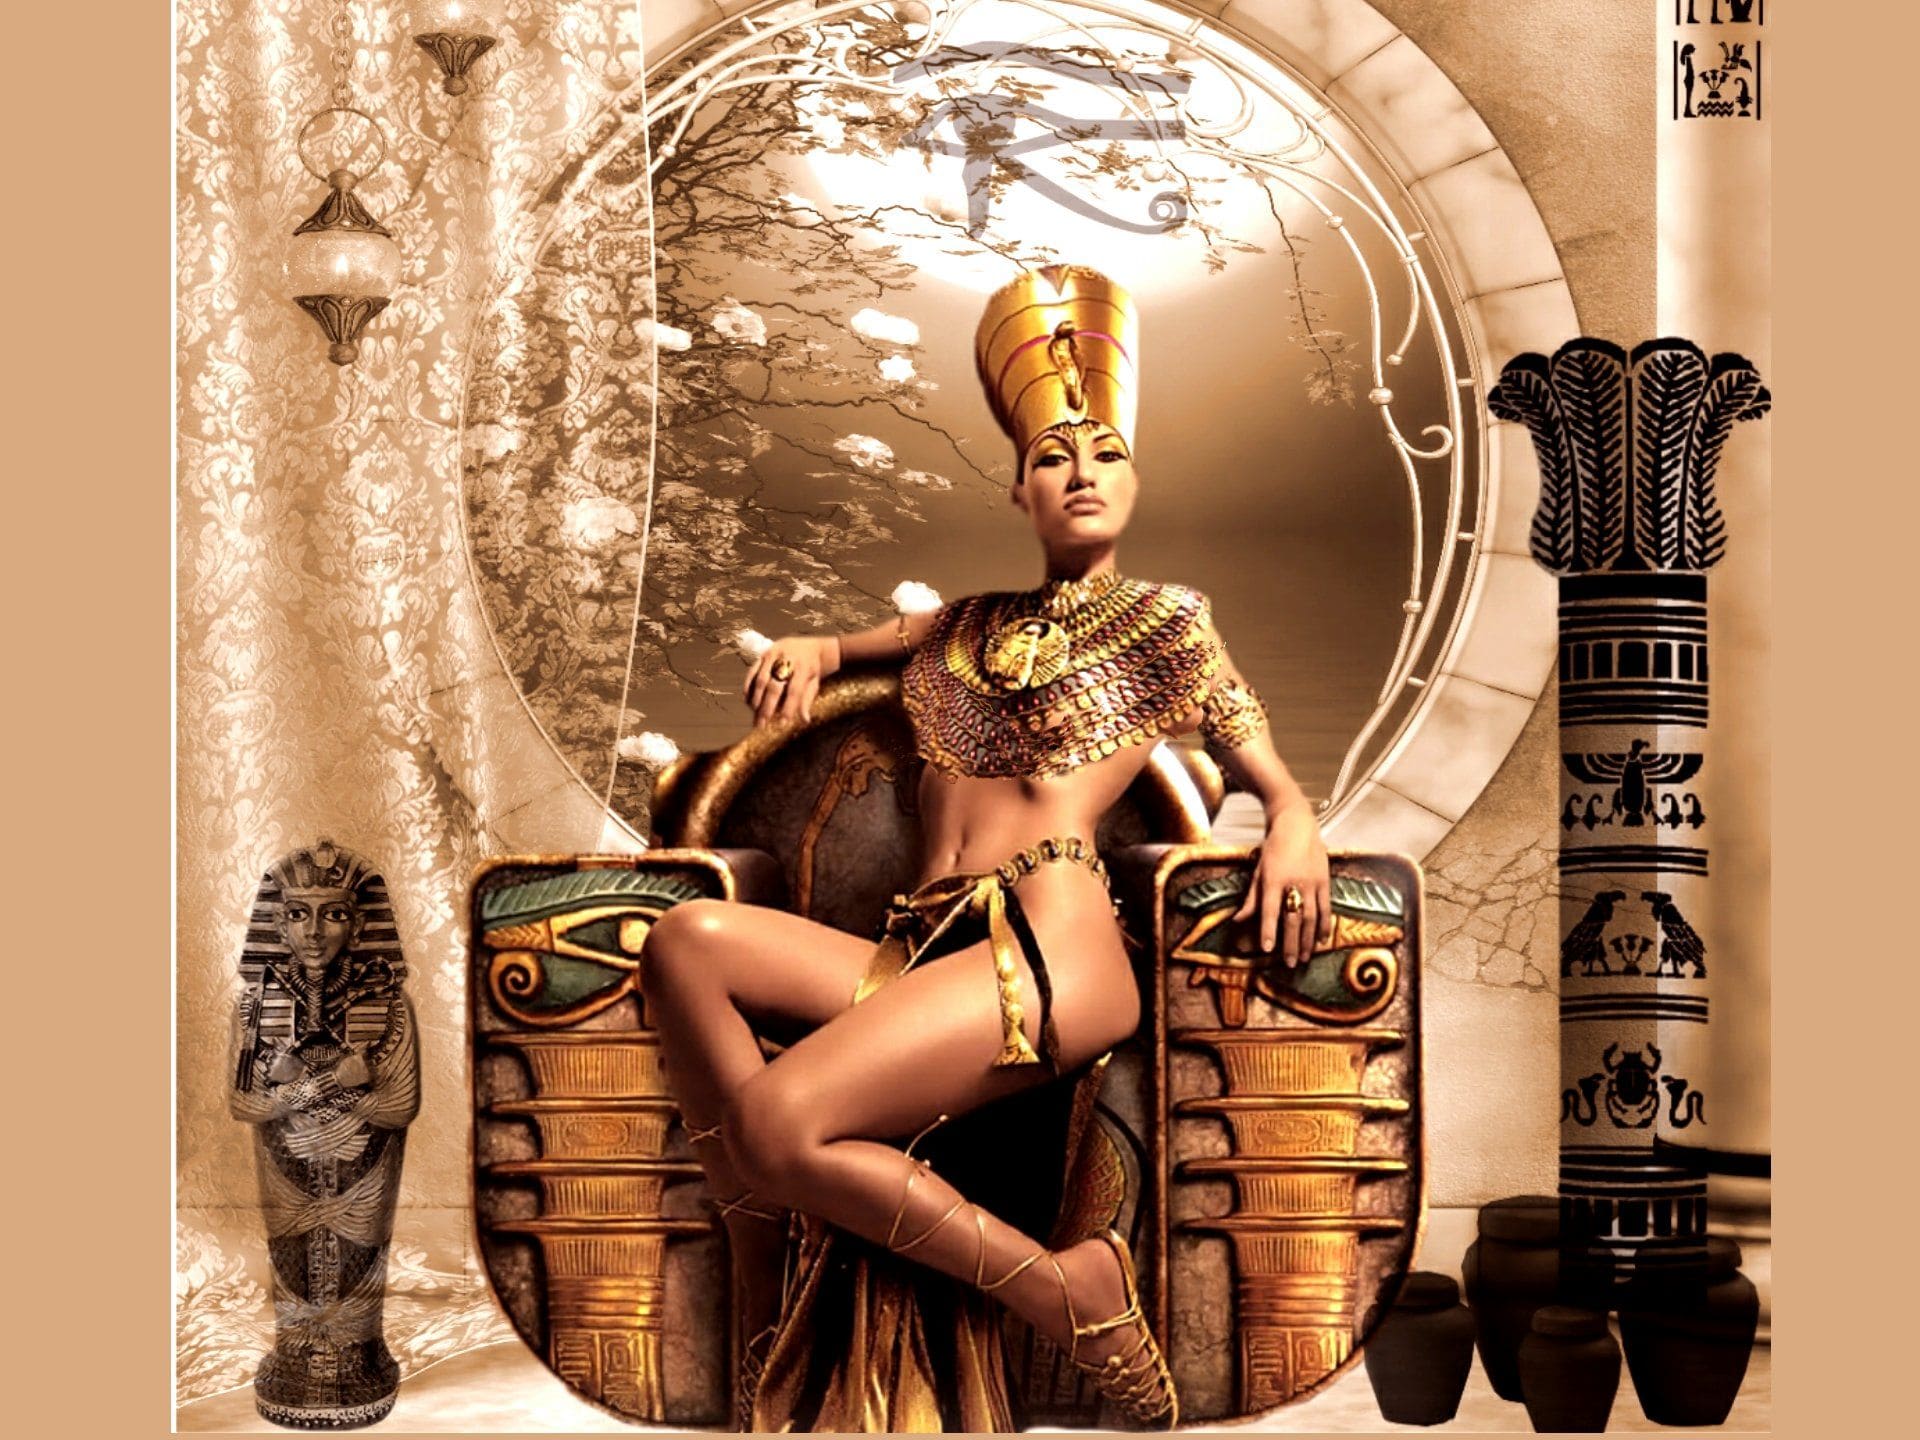 Таинственная Нефертити тоже была связана со звездными путями фараонов